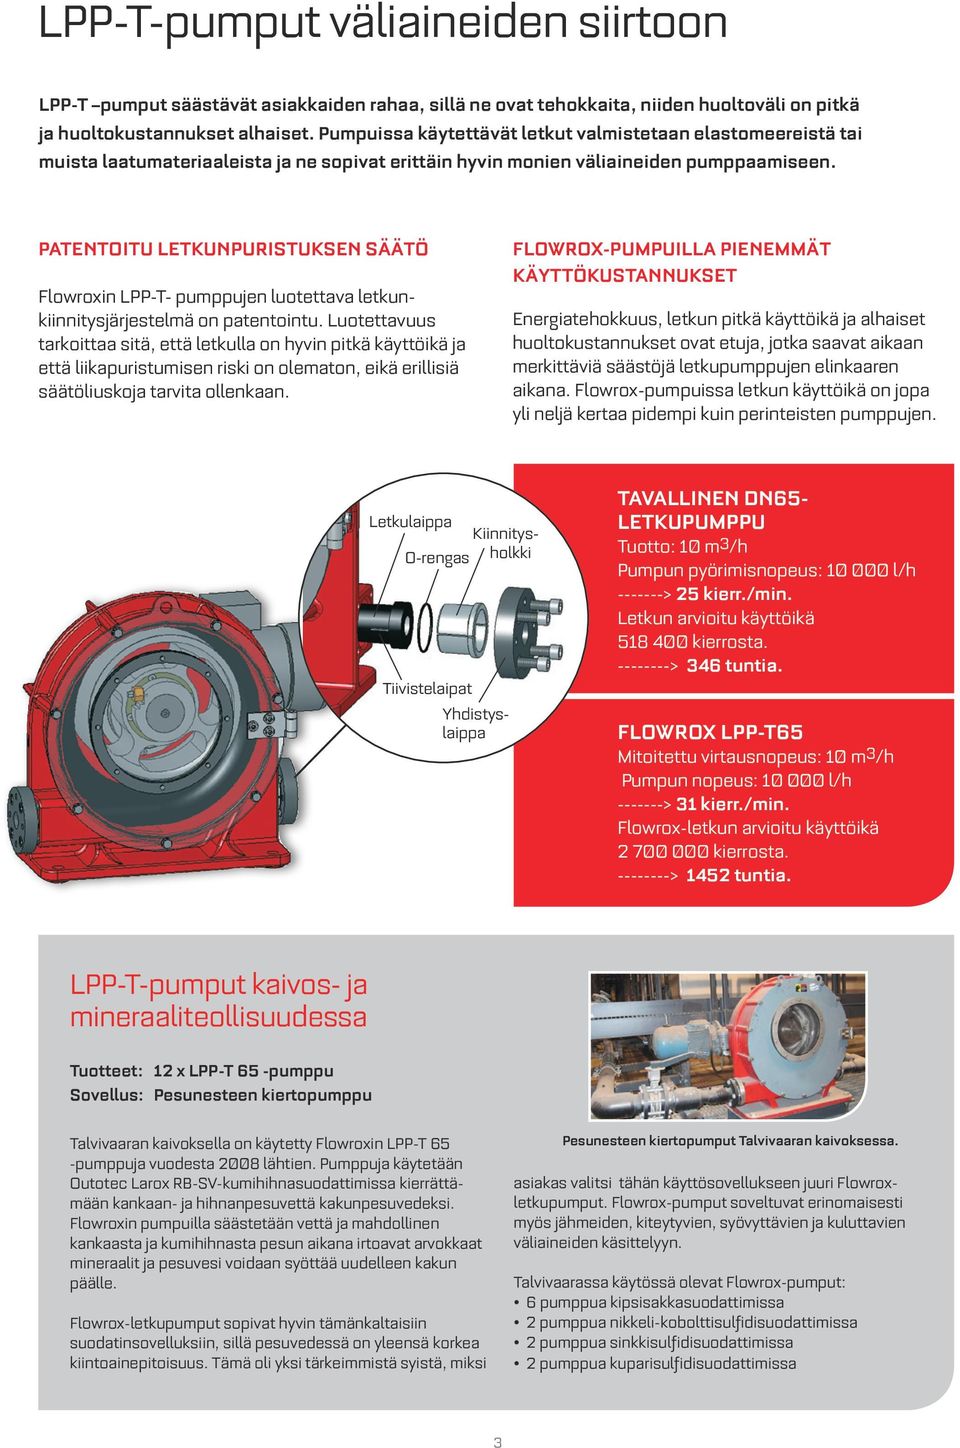 PATENTOITU LETKUNPURISTUKSEN SÄÄTÖ Flowroxin LPP-T- pumppujen luotettava letkunkiinnitysjärjestelmä on patentointu.